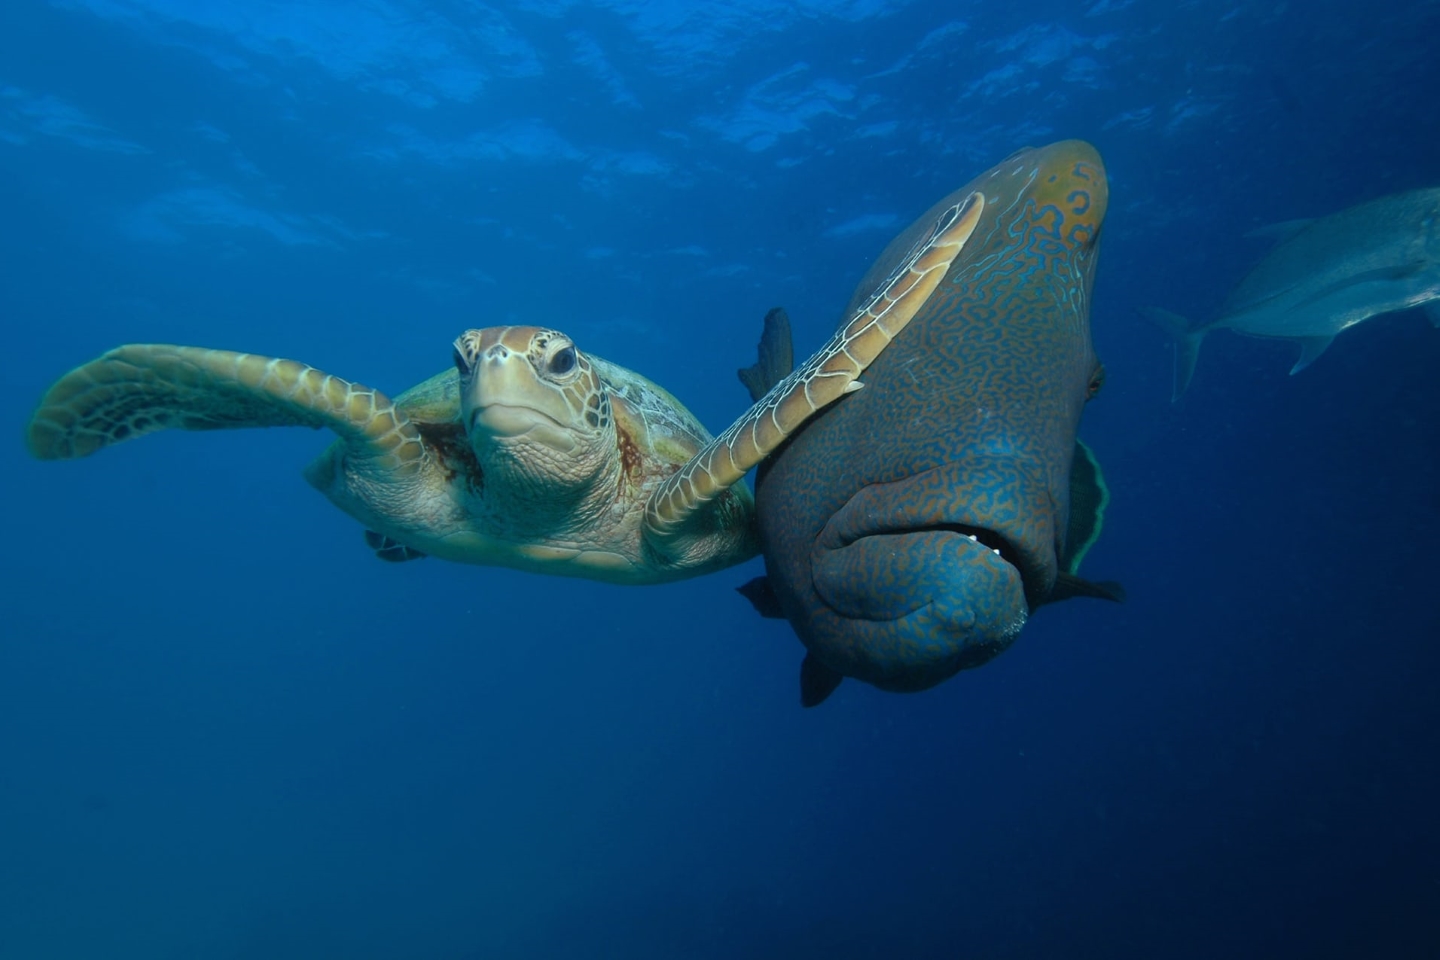 "Пощечина. Извините, сэр" Трой Мейн выиграл в категории "Под водой" за свою фантастическую фотографию самки морской черепахи, дающей пощечину мимо проходящей рыбе в Баконге, Филиппины. Фото: Troy Mayne